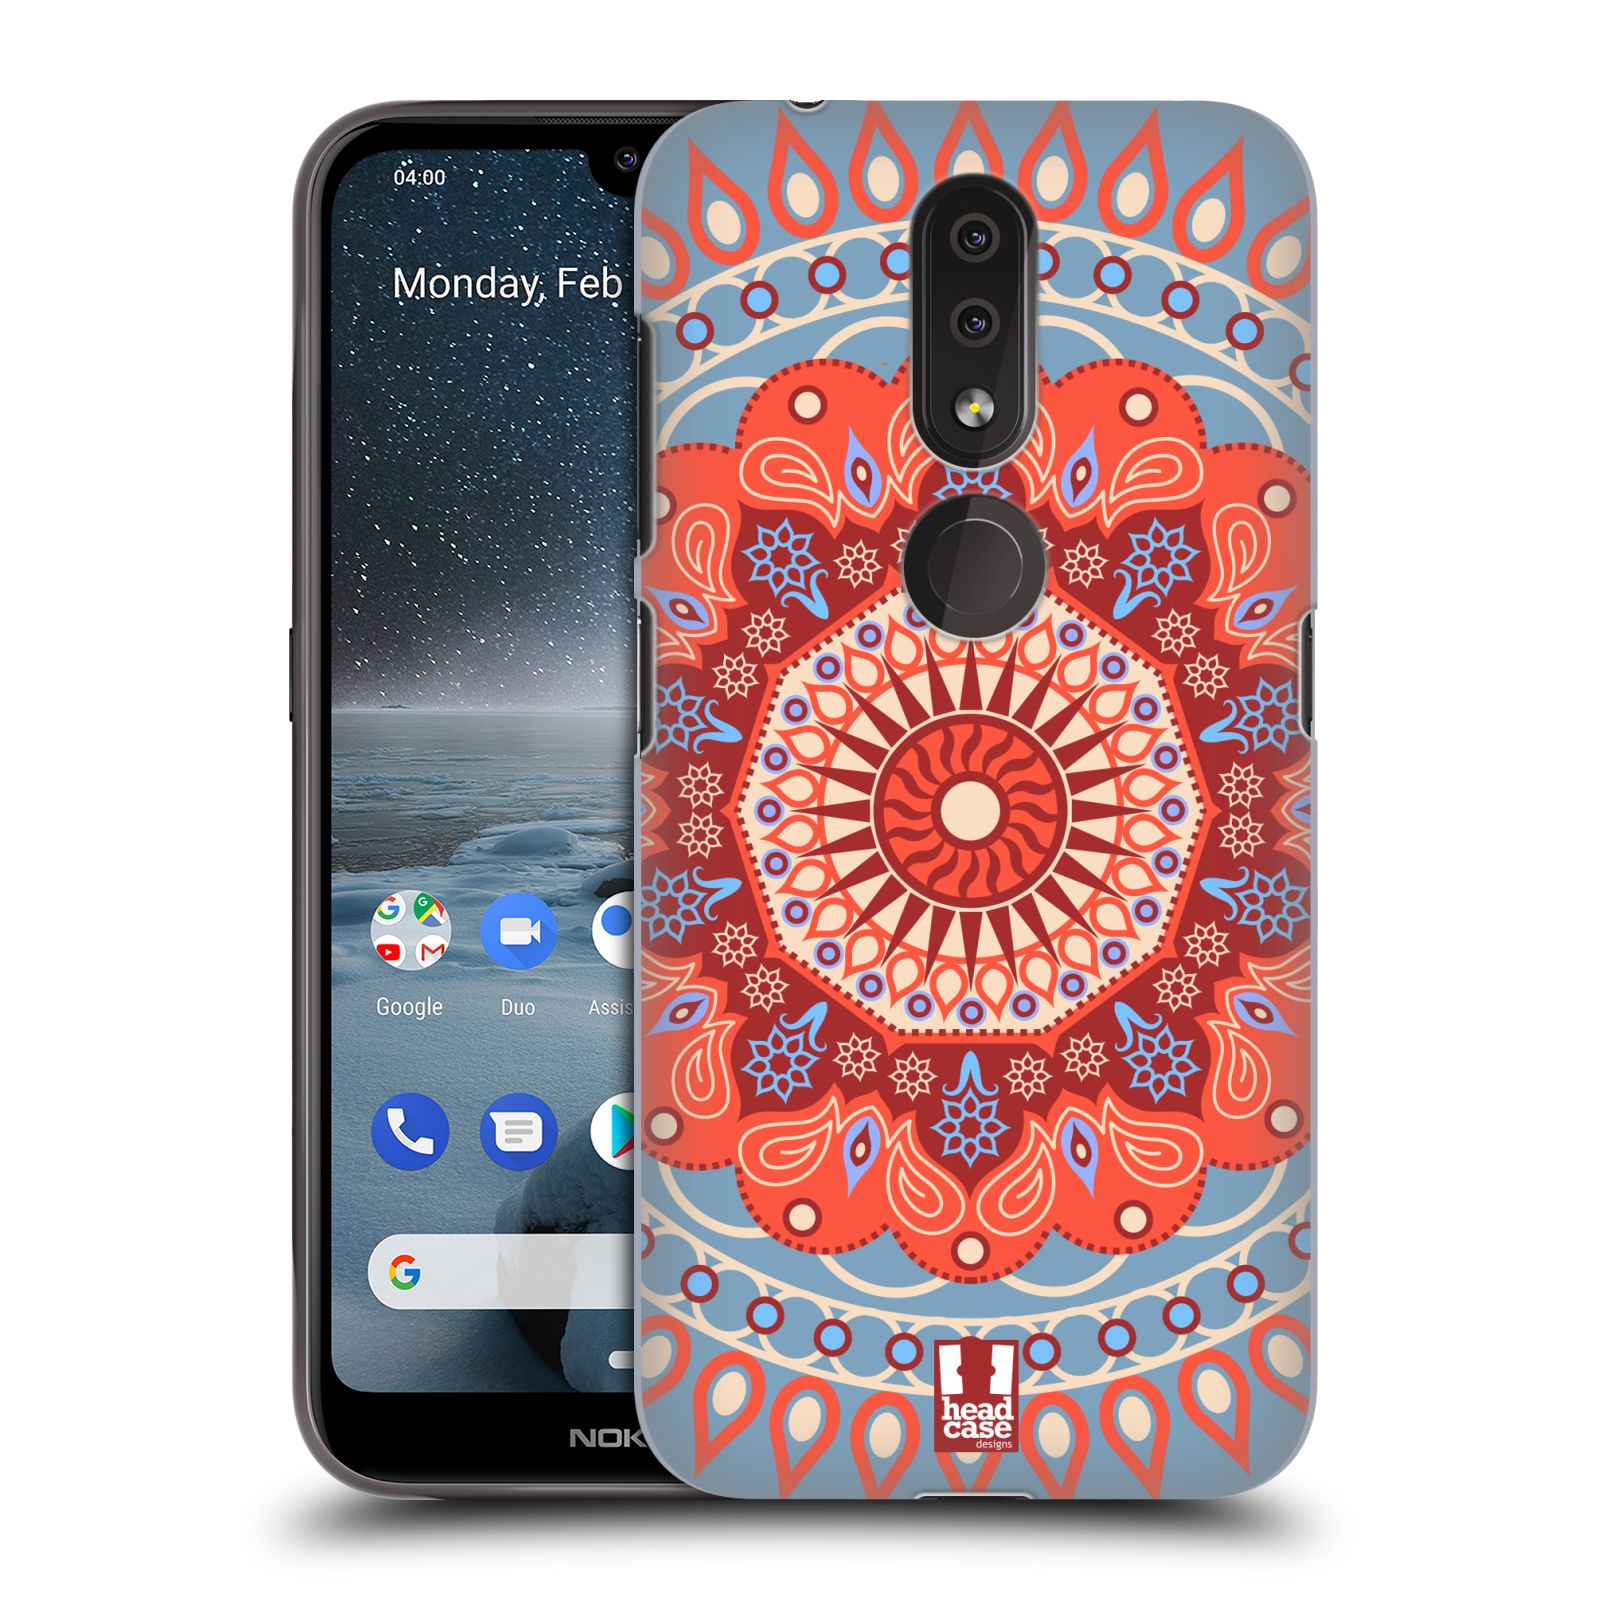 Pouzdro na mobil Nokia 4.2 - HEAD CASE - vzor Indie Mandala slunce barevný motiv ČERVENÁ A MODRÁ